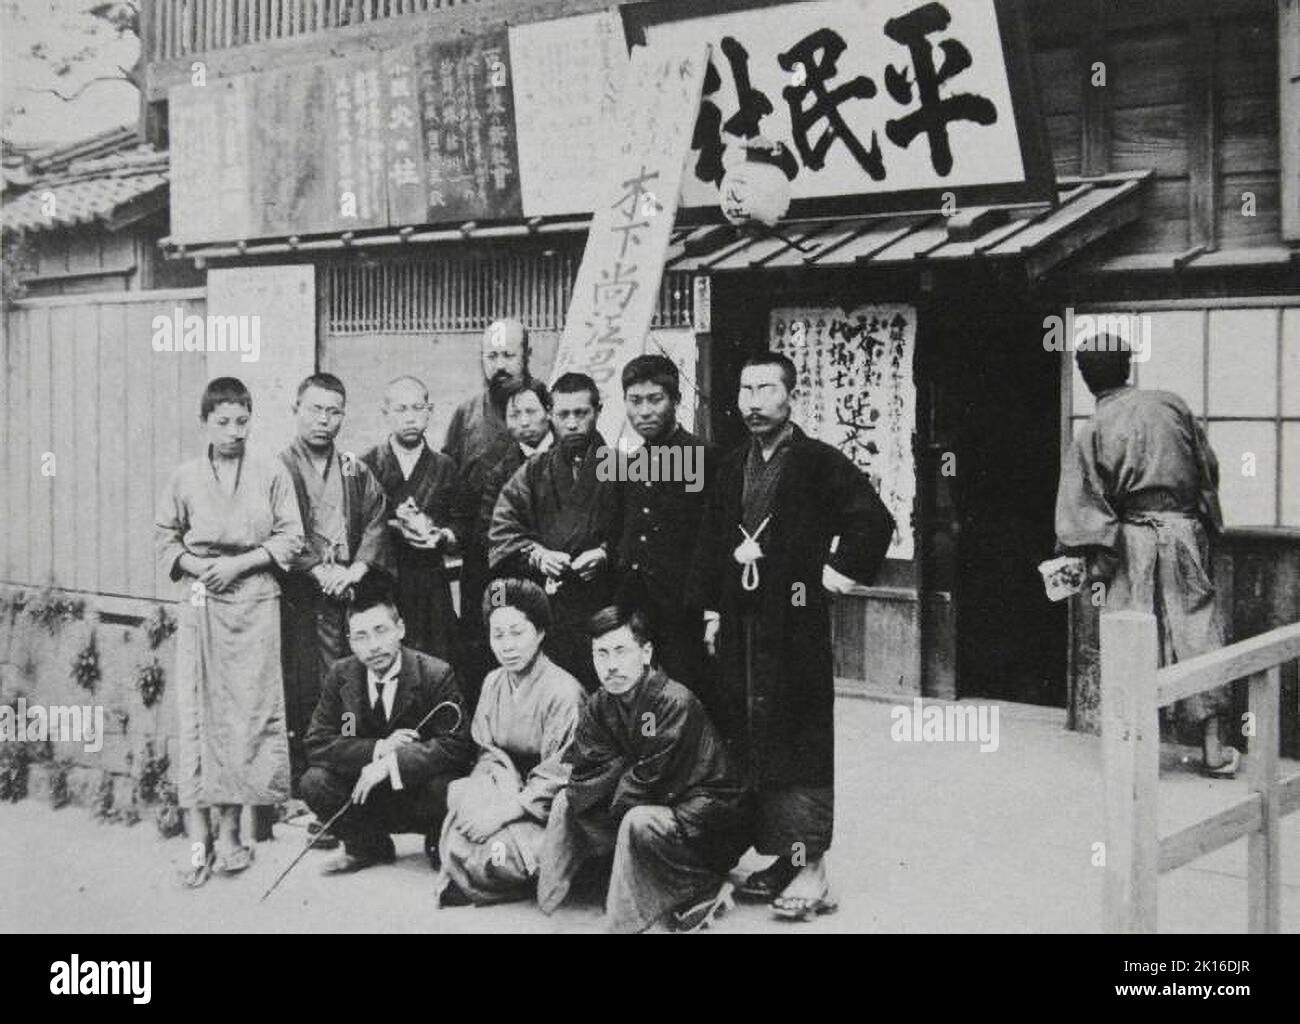 Photo de groupe de Heimin-sha, devant leur bureau, Tokyo, Japon, 1905. Sakai Toshihiko (2 à gauche), Kinoshita Naoe (1 à droite) sont vus. Ils ont publié le journal Heimin Shimbun (The commoner's News) de 1903 à 1905. Ils ont insisté sur le pacifisme et ont encouragé à répandre des pensées socialistes. Banque D'Images